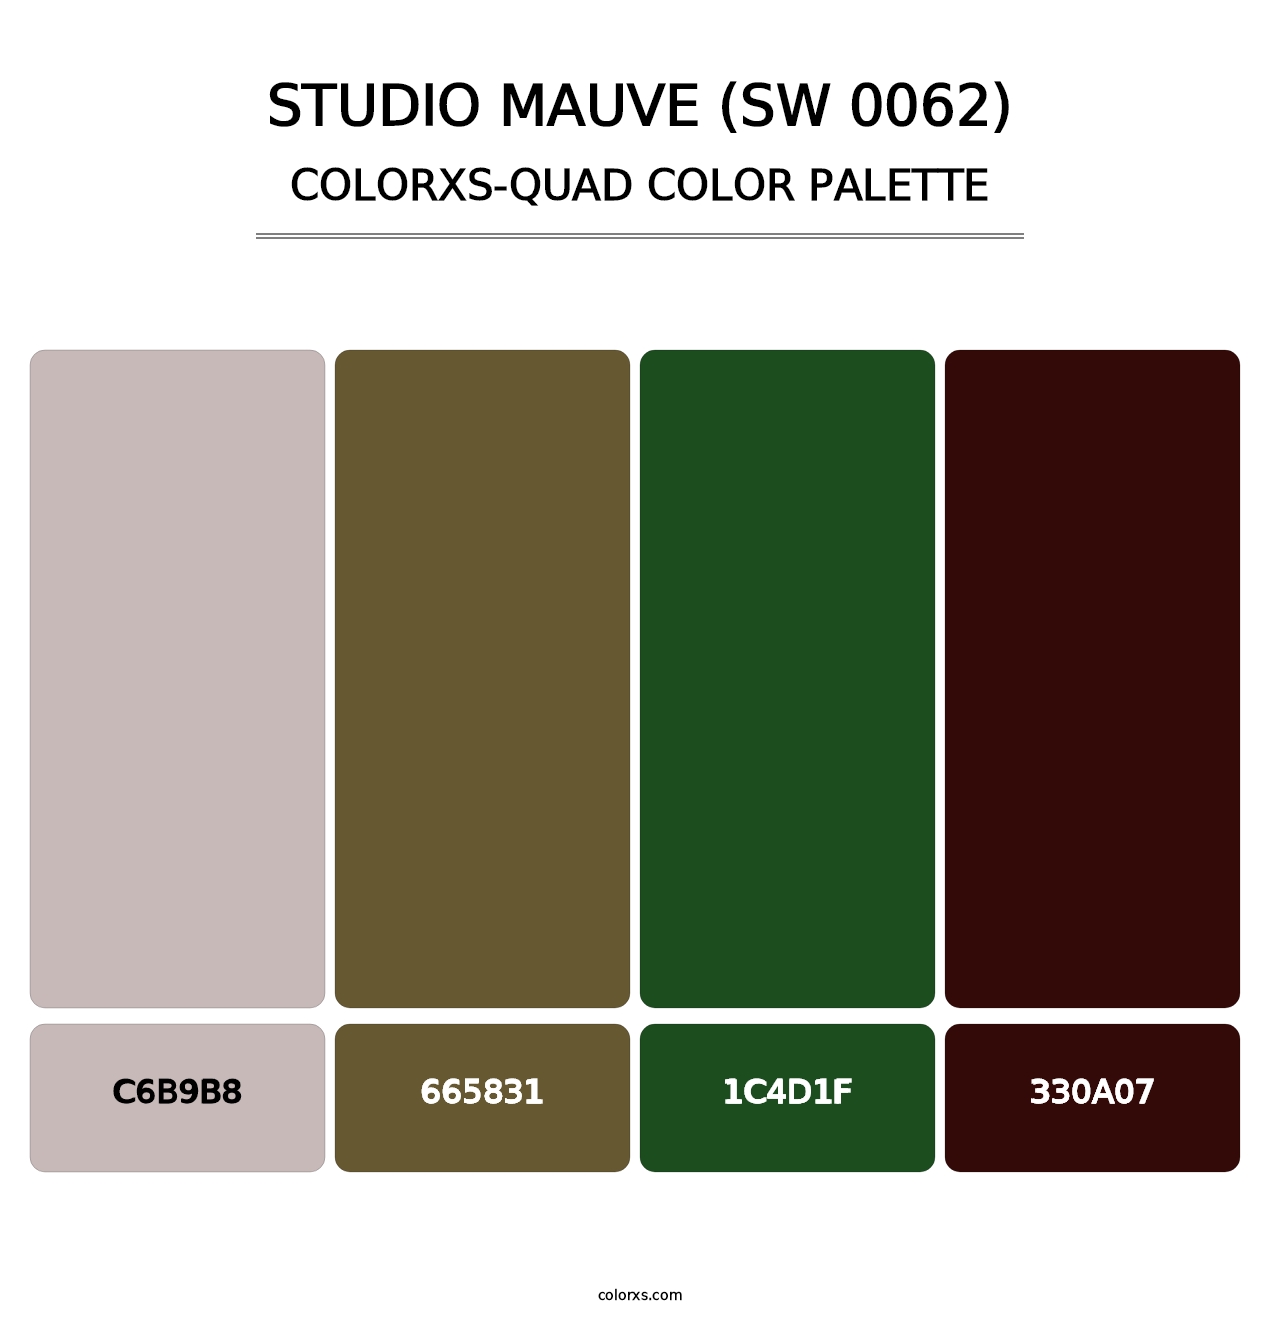 Studio Mauve (SW 0062) - Colorxs Quad Palette